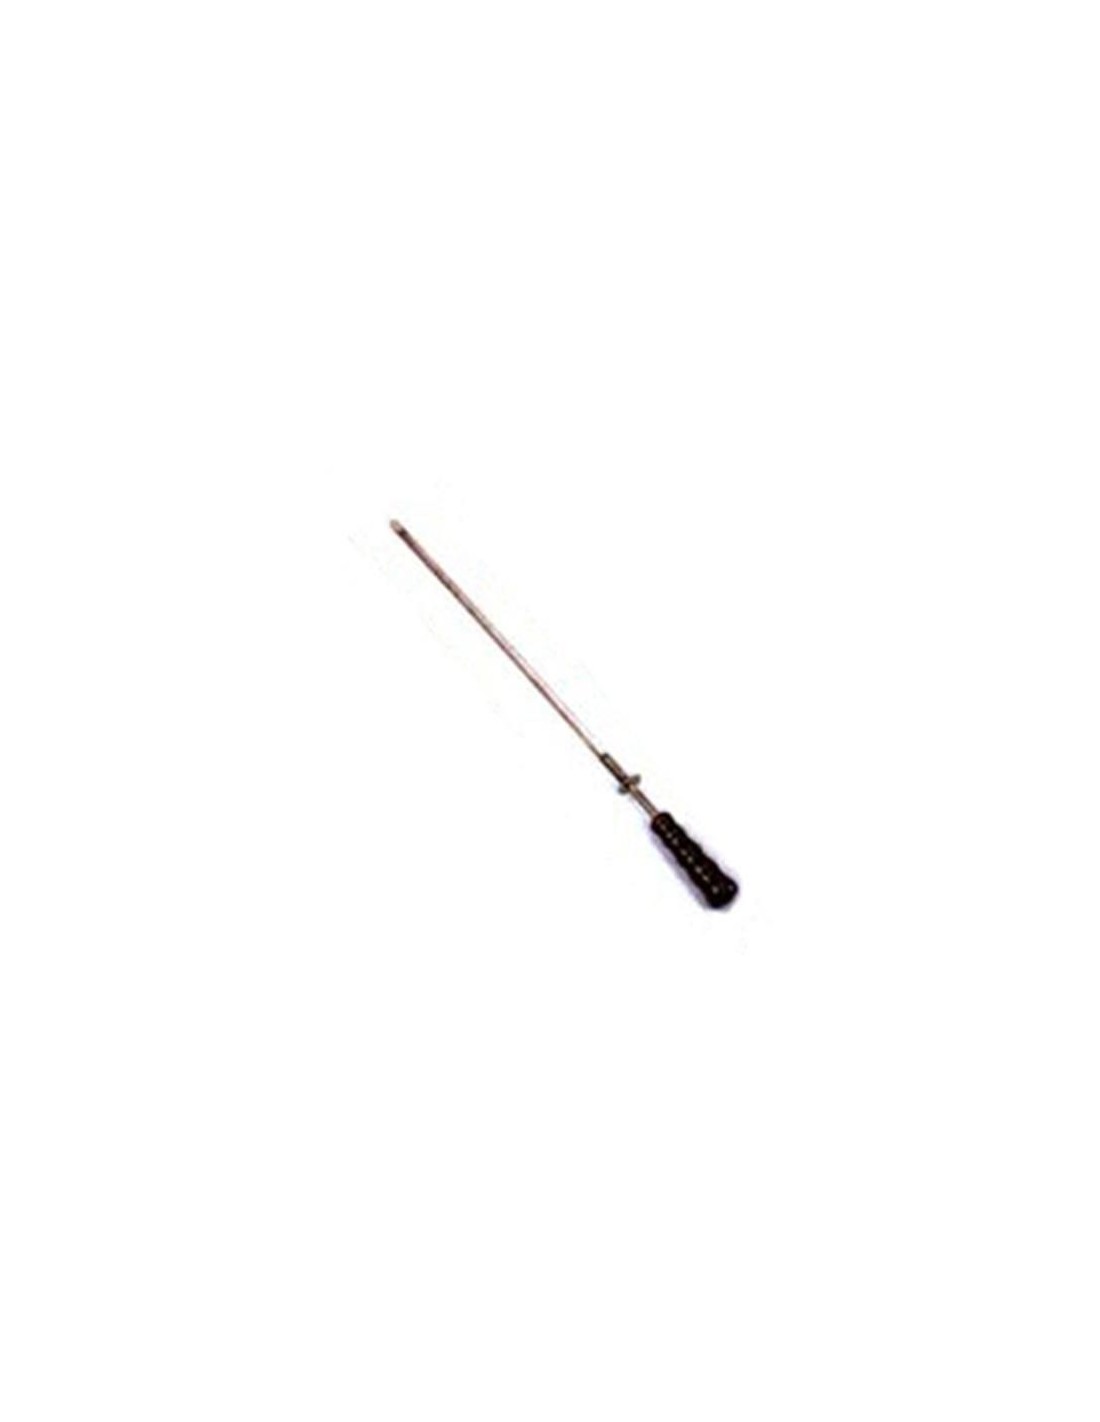 Espada cm 1 con empuñadura atérmica - Longitud de la hoja cm 50 - Distancia cm 5,5 - Empuñadura cm 6